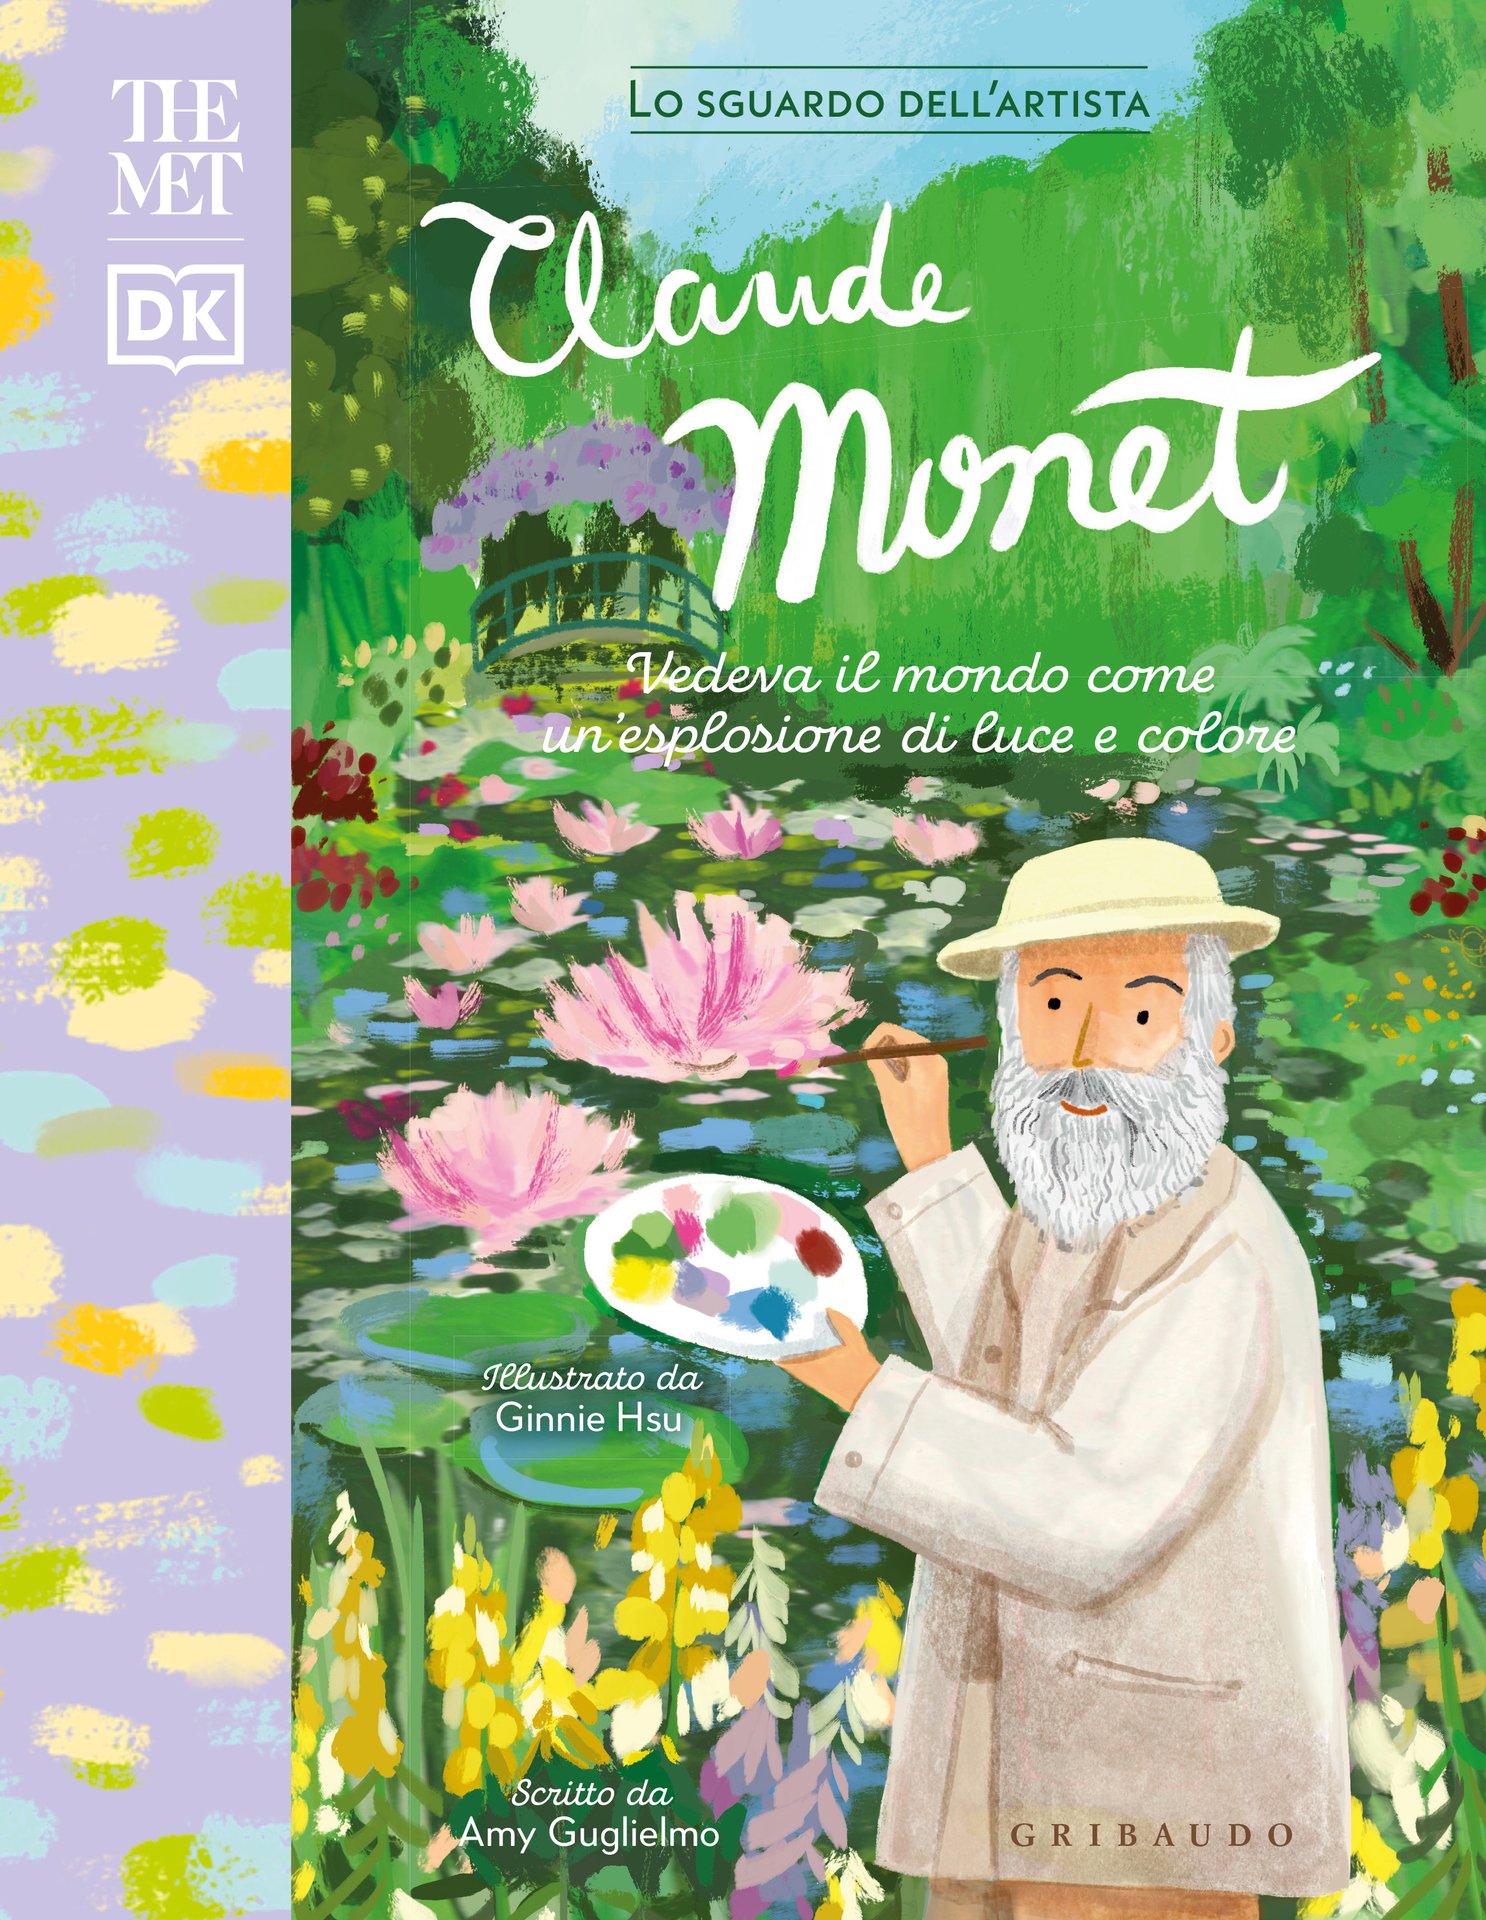 Monet – The MET